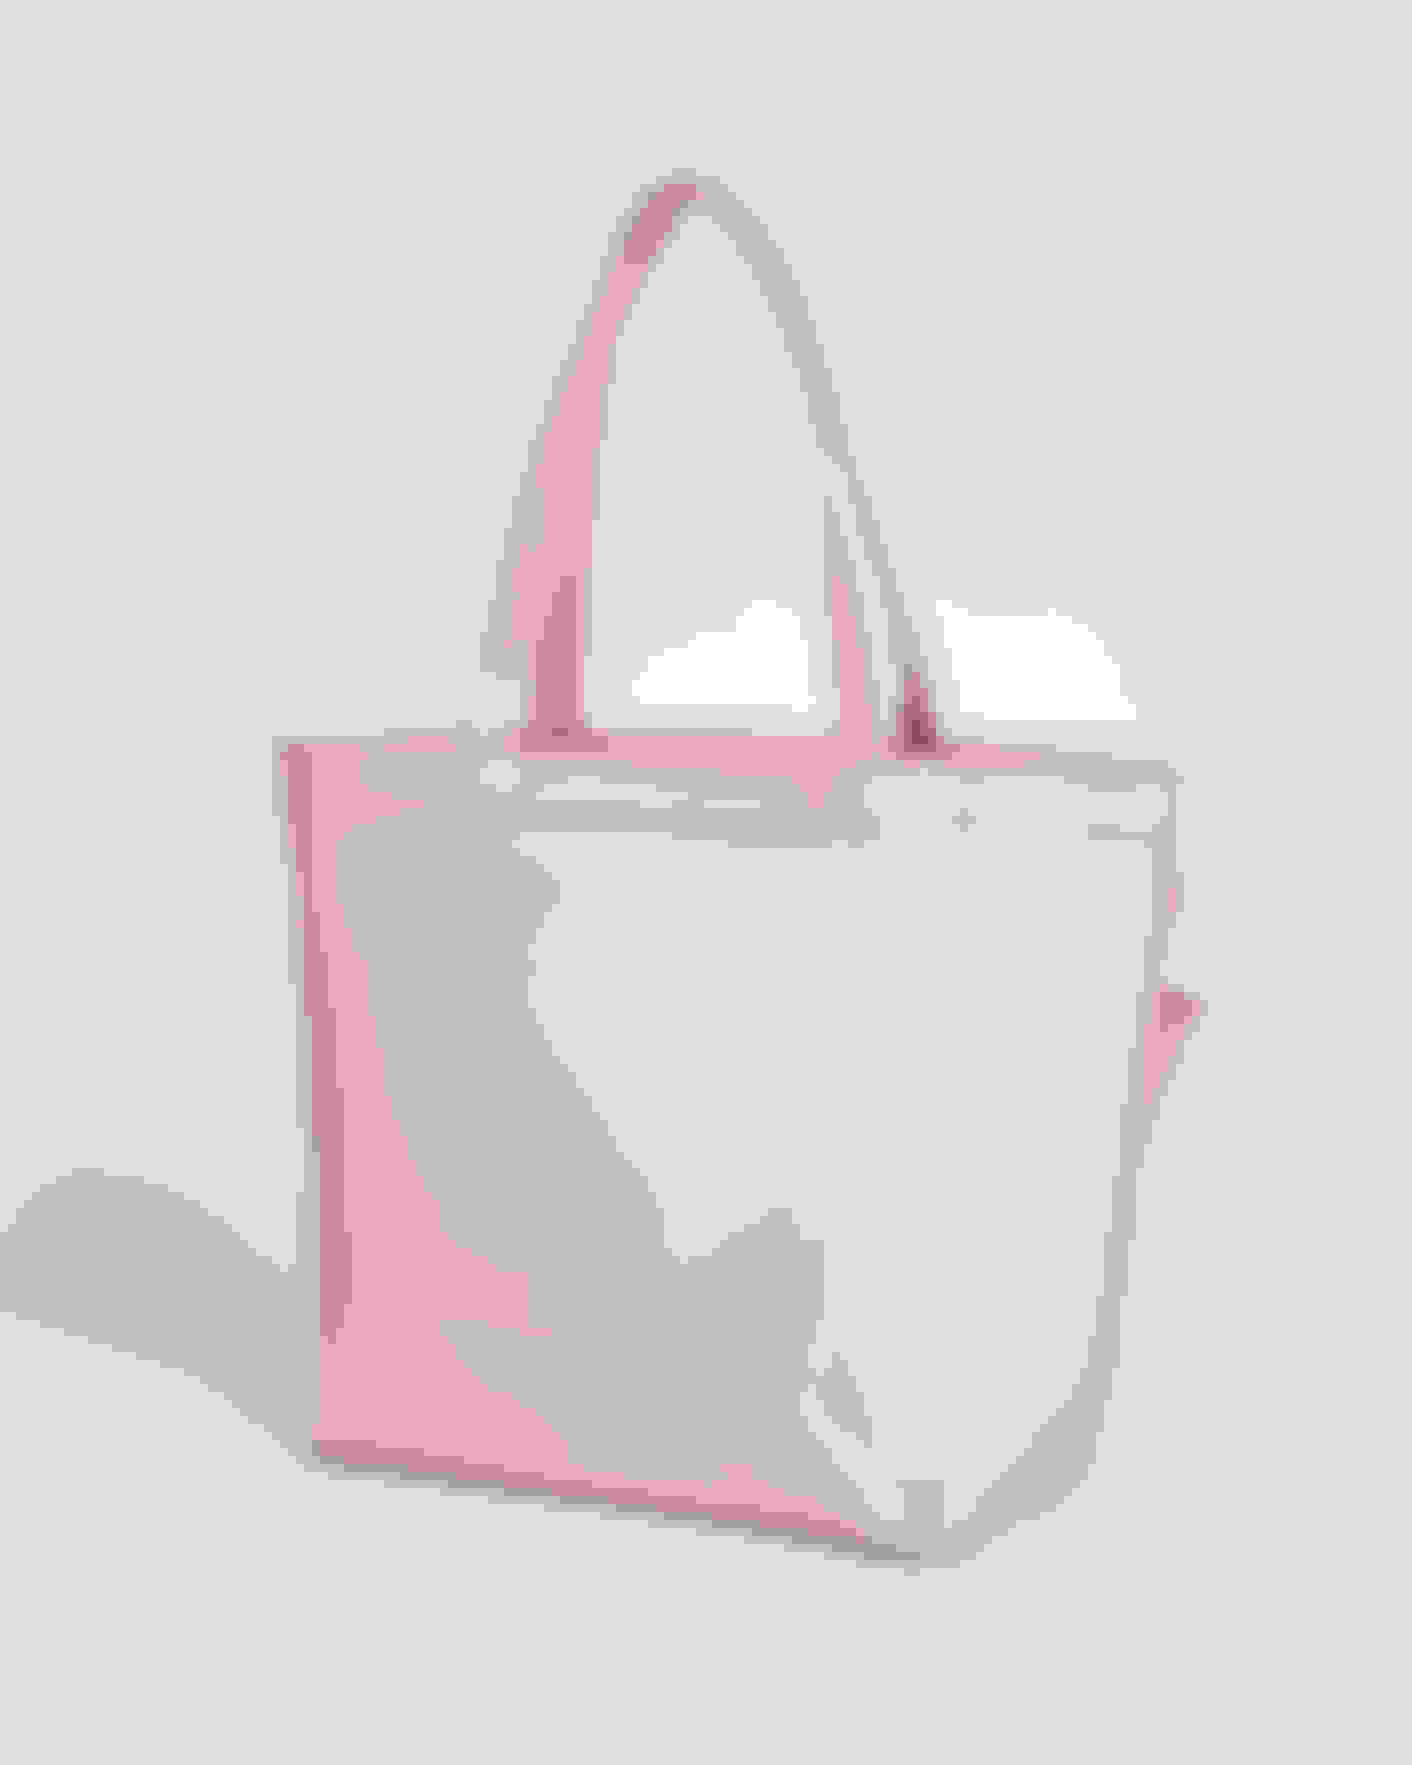 Be transparent Pink bag